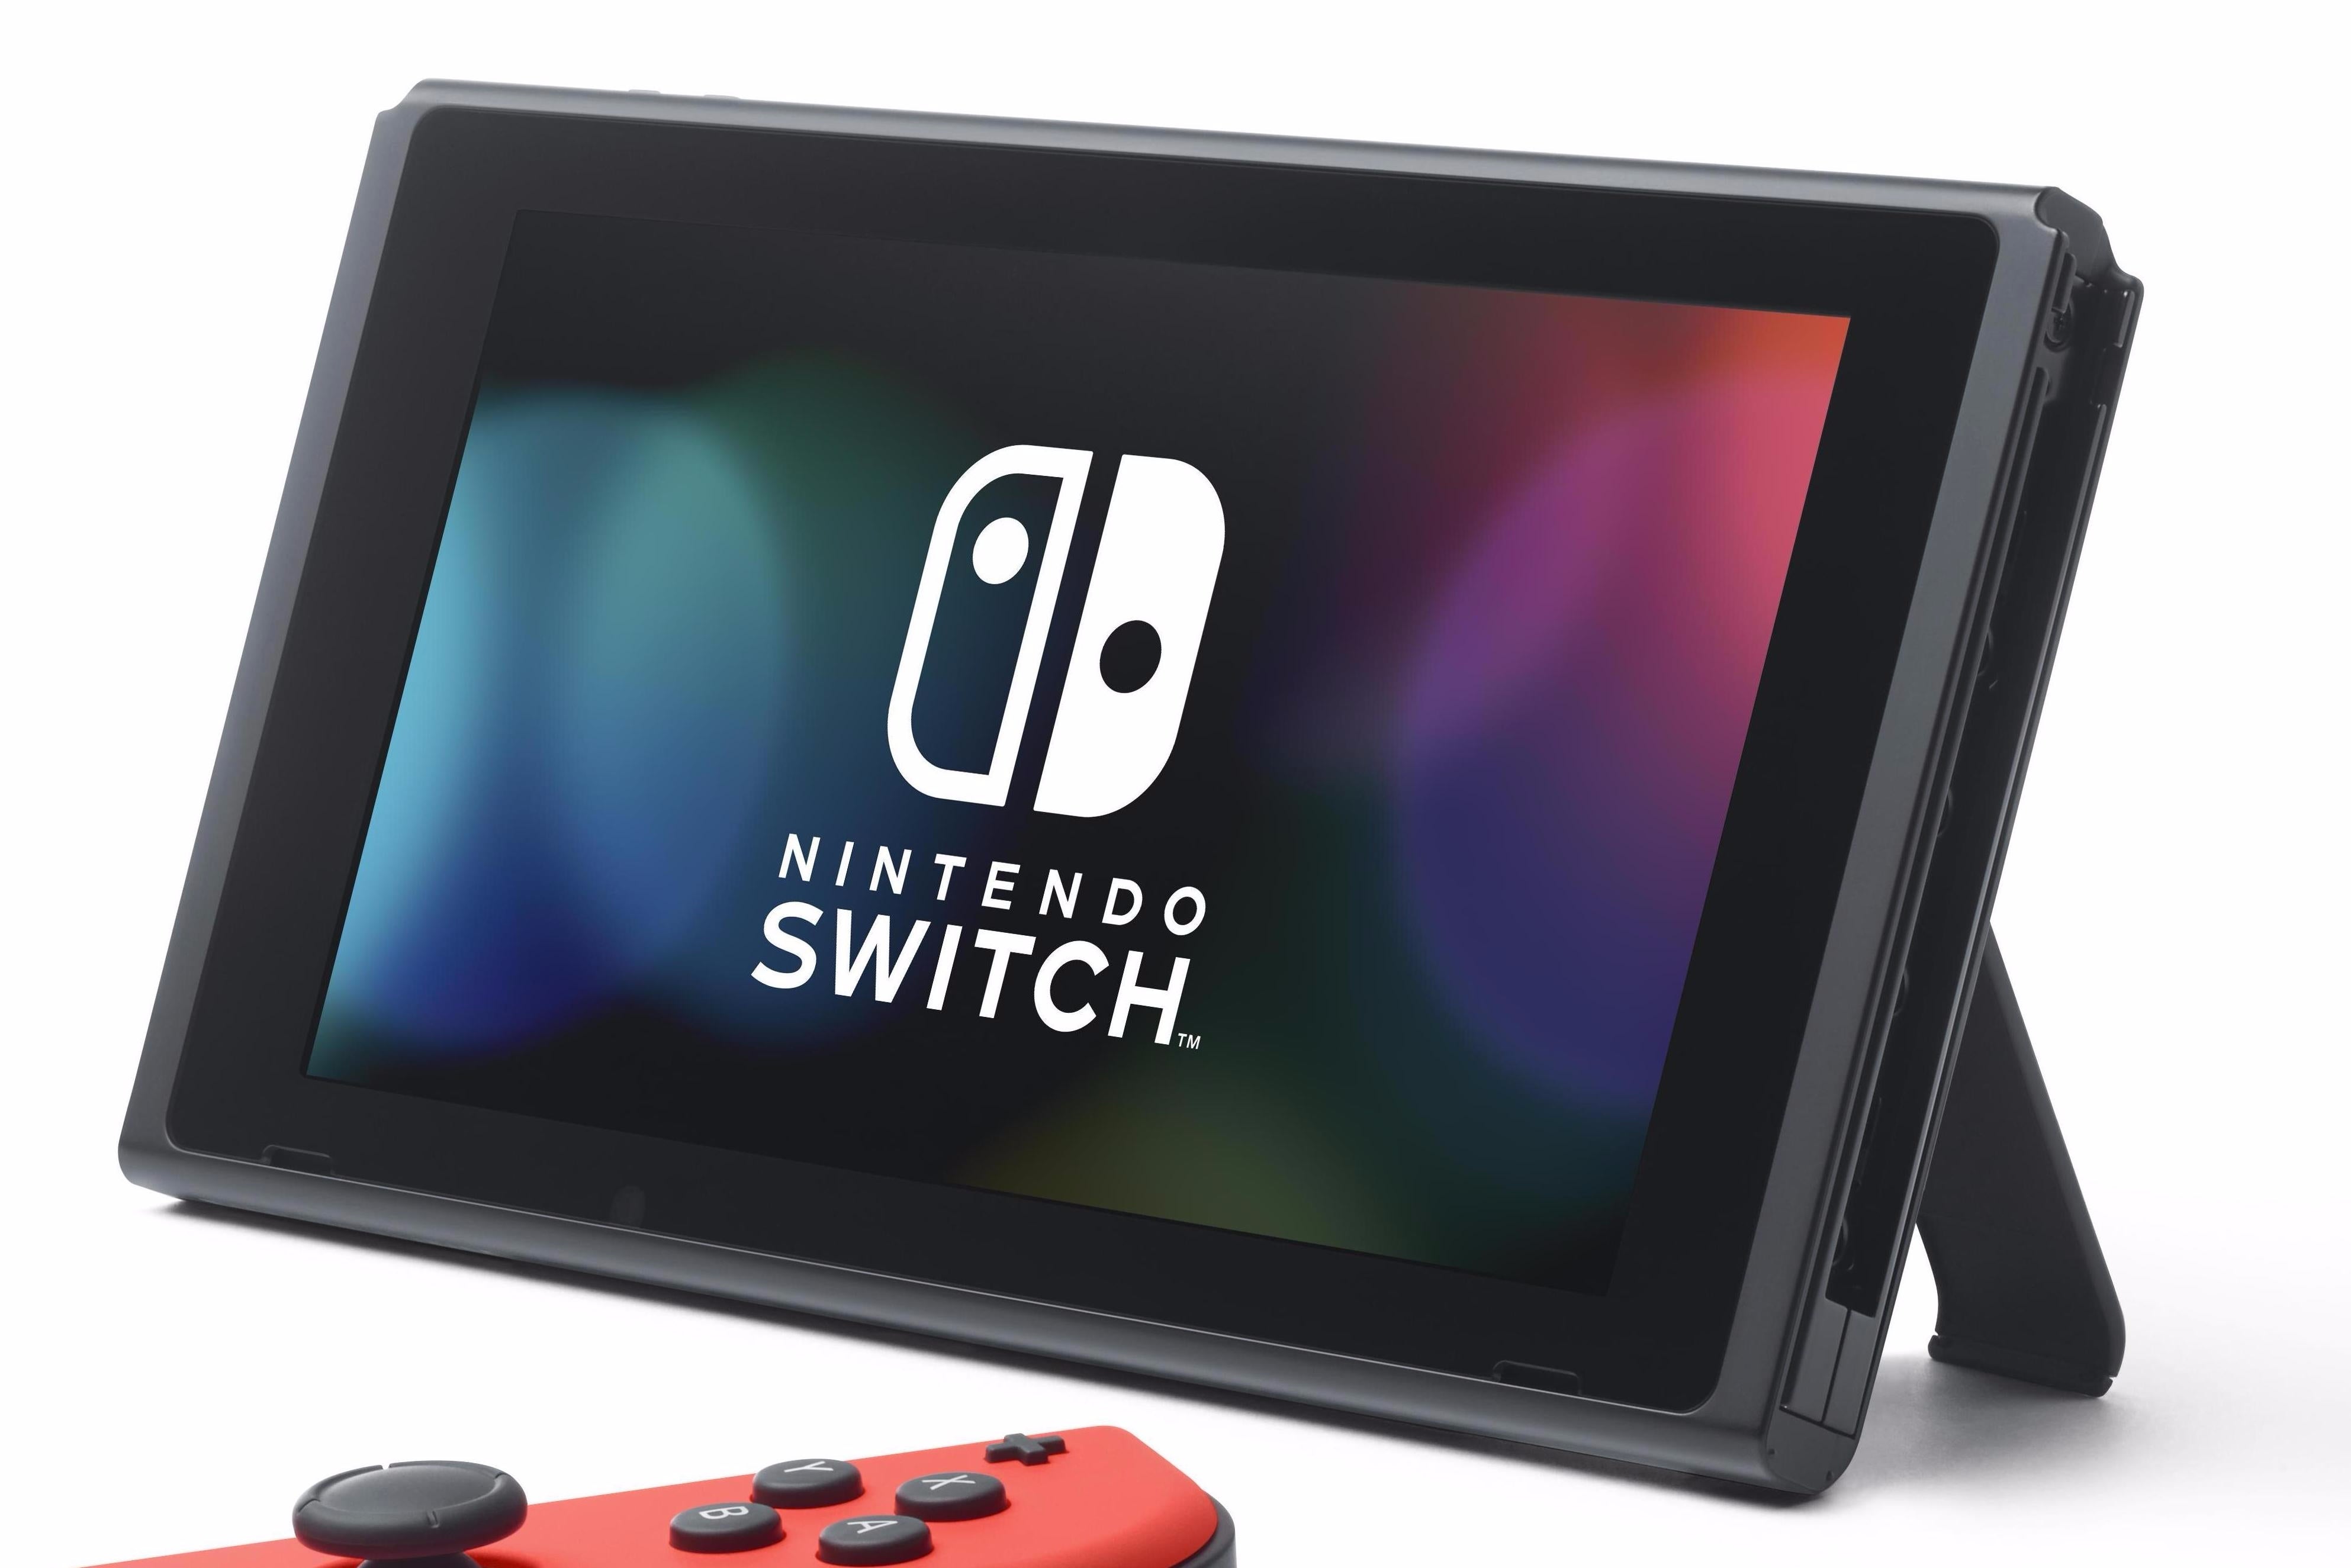 Immagine di Nintendo Switch: i due volti di una console ibrida - editoriale